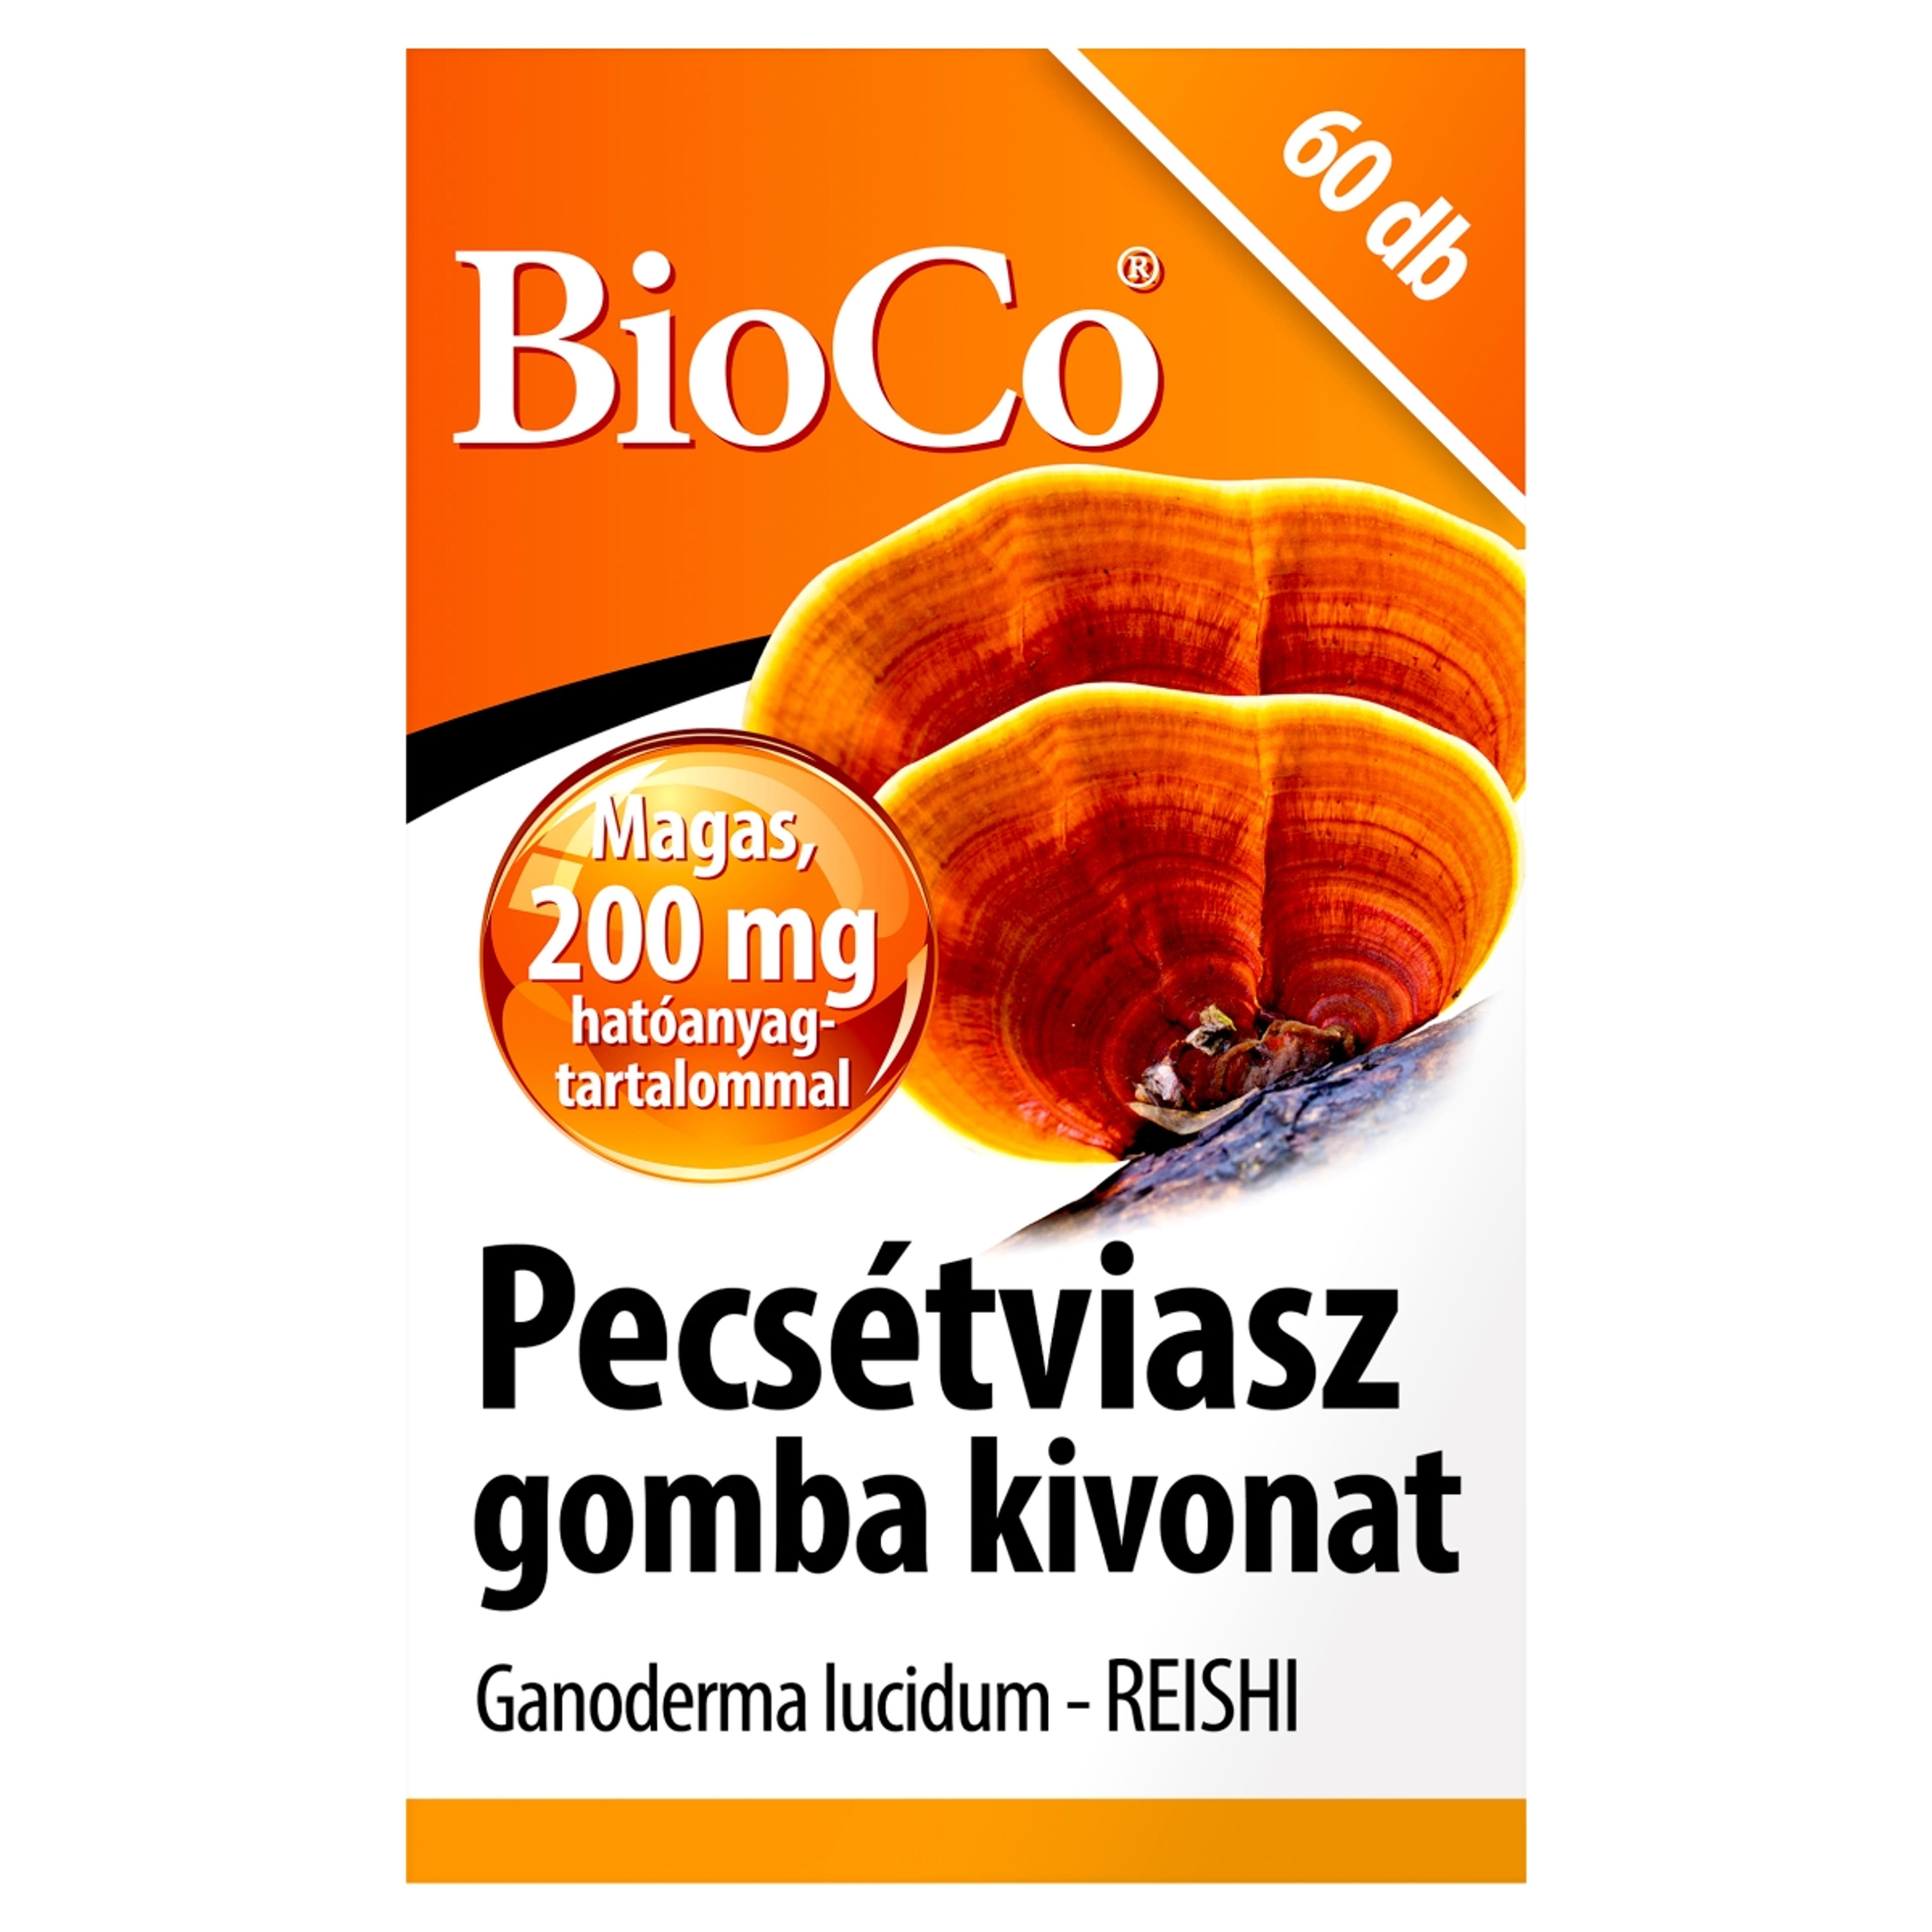 Bioco Pecsétviaszgomba kivonat étrendkiegészítő tabletta - 60 db